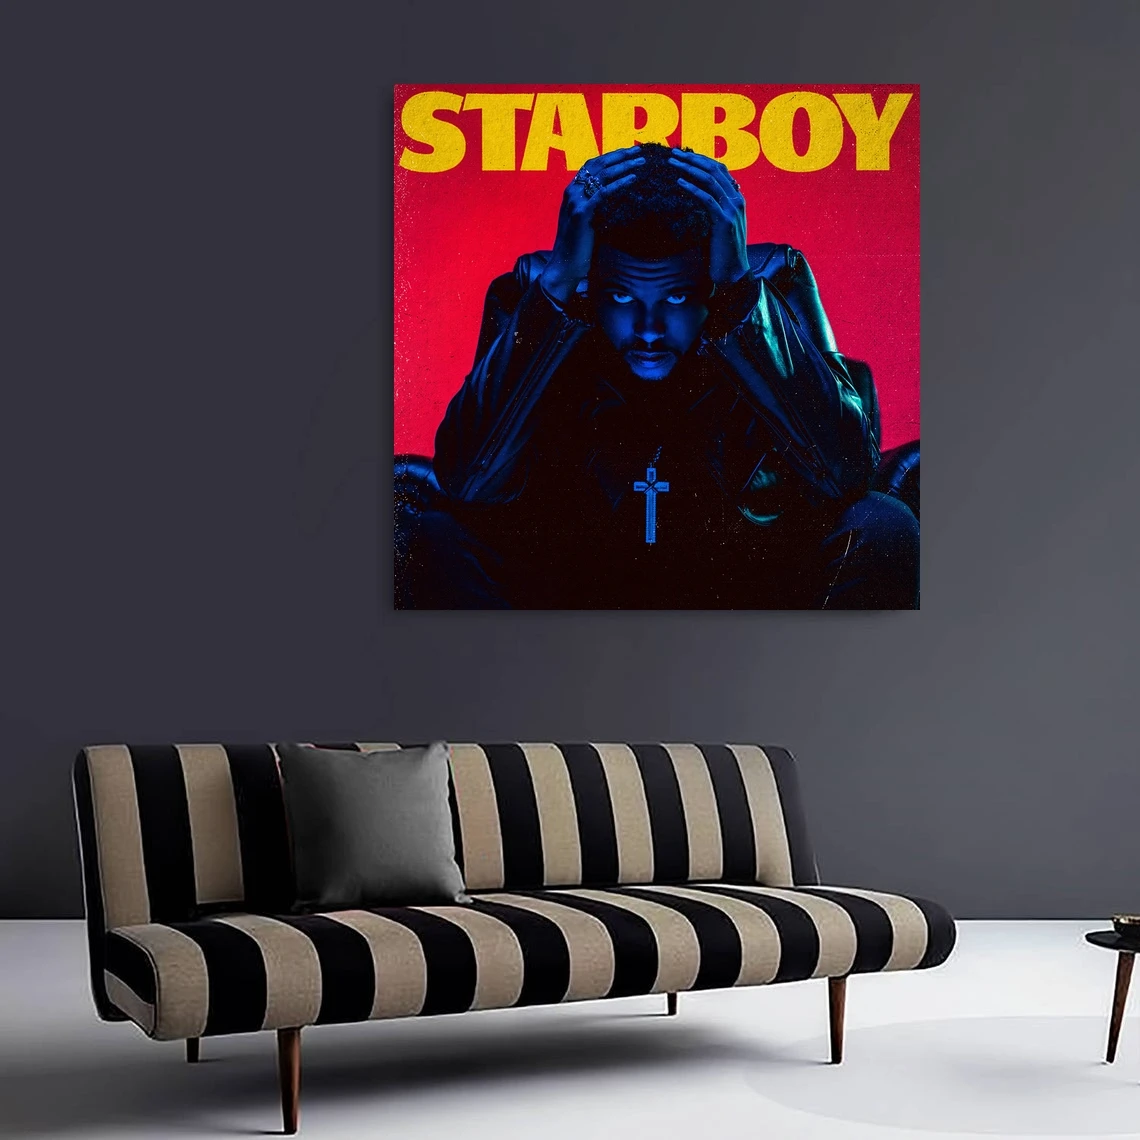 The Weeknd - Starboy Zenei Album Borító Vásznat Poszter Haza Falfestés Dekoráció (Nincs Keret) 2